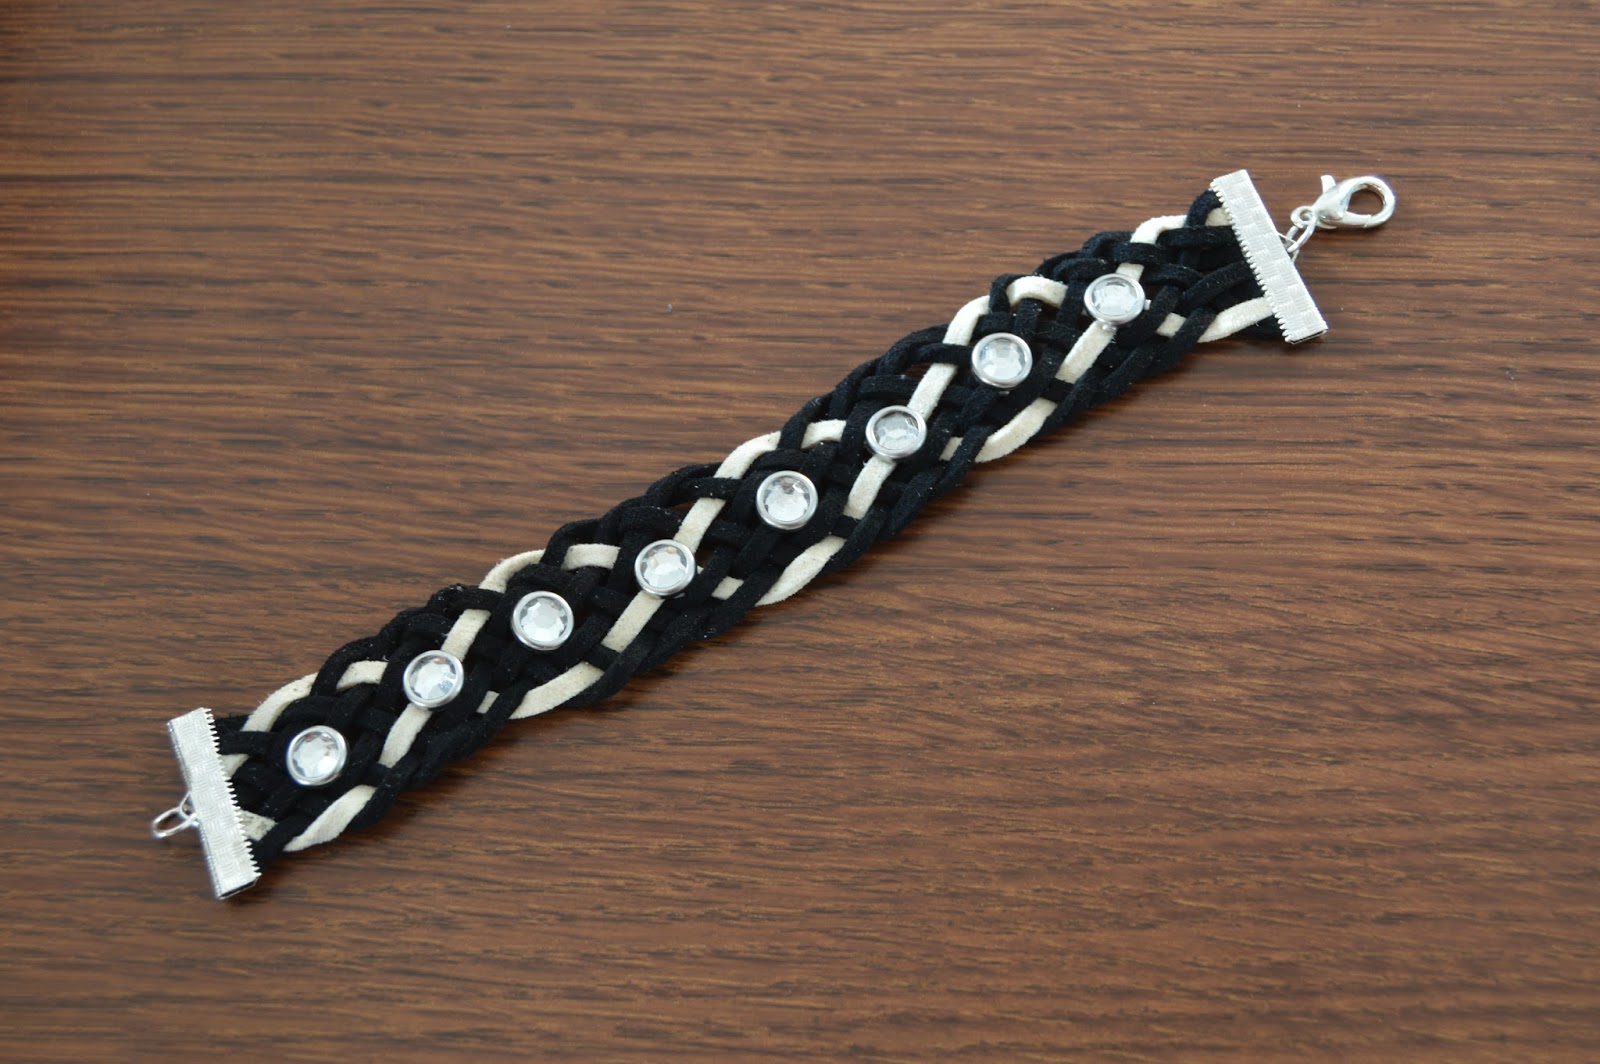 Friendship Bracelet Kit with Alphabet Beads, Floss, String